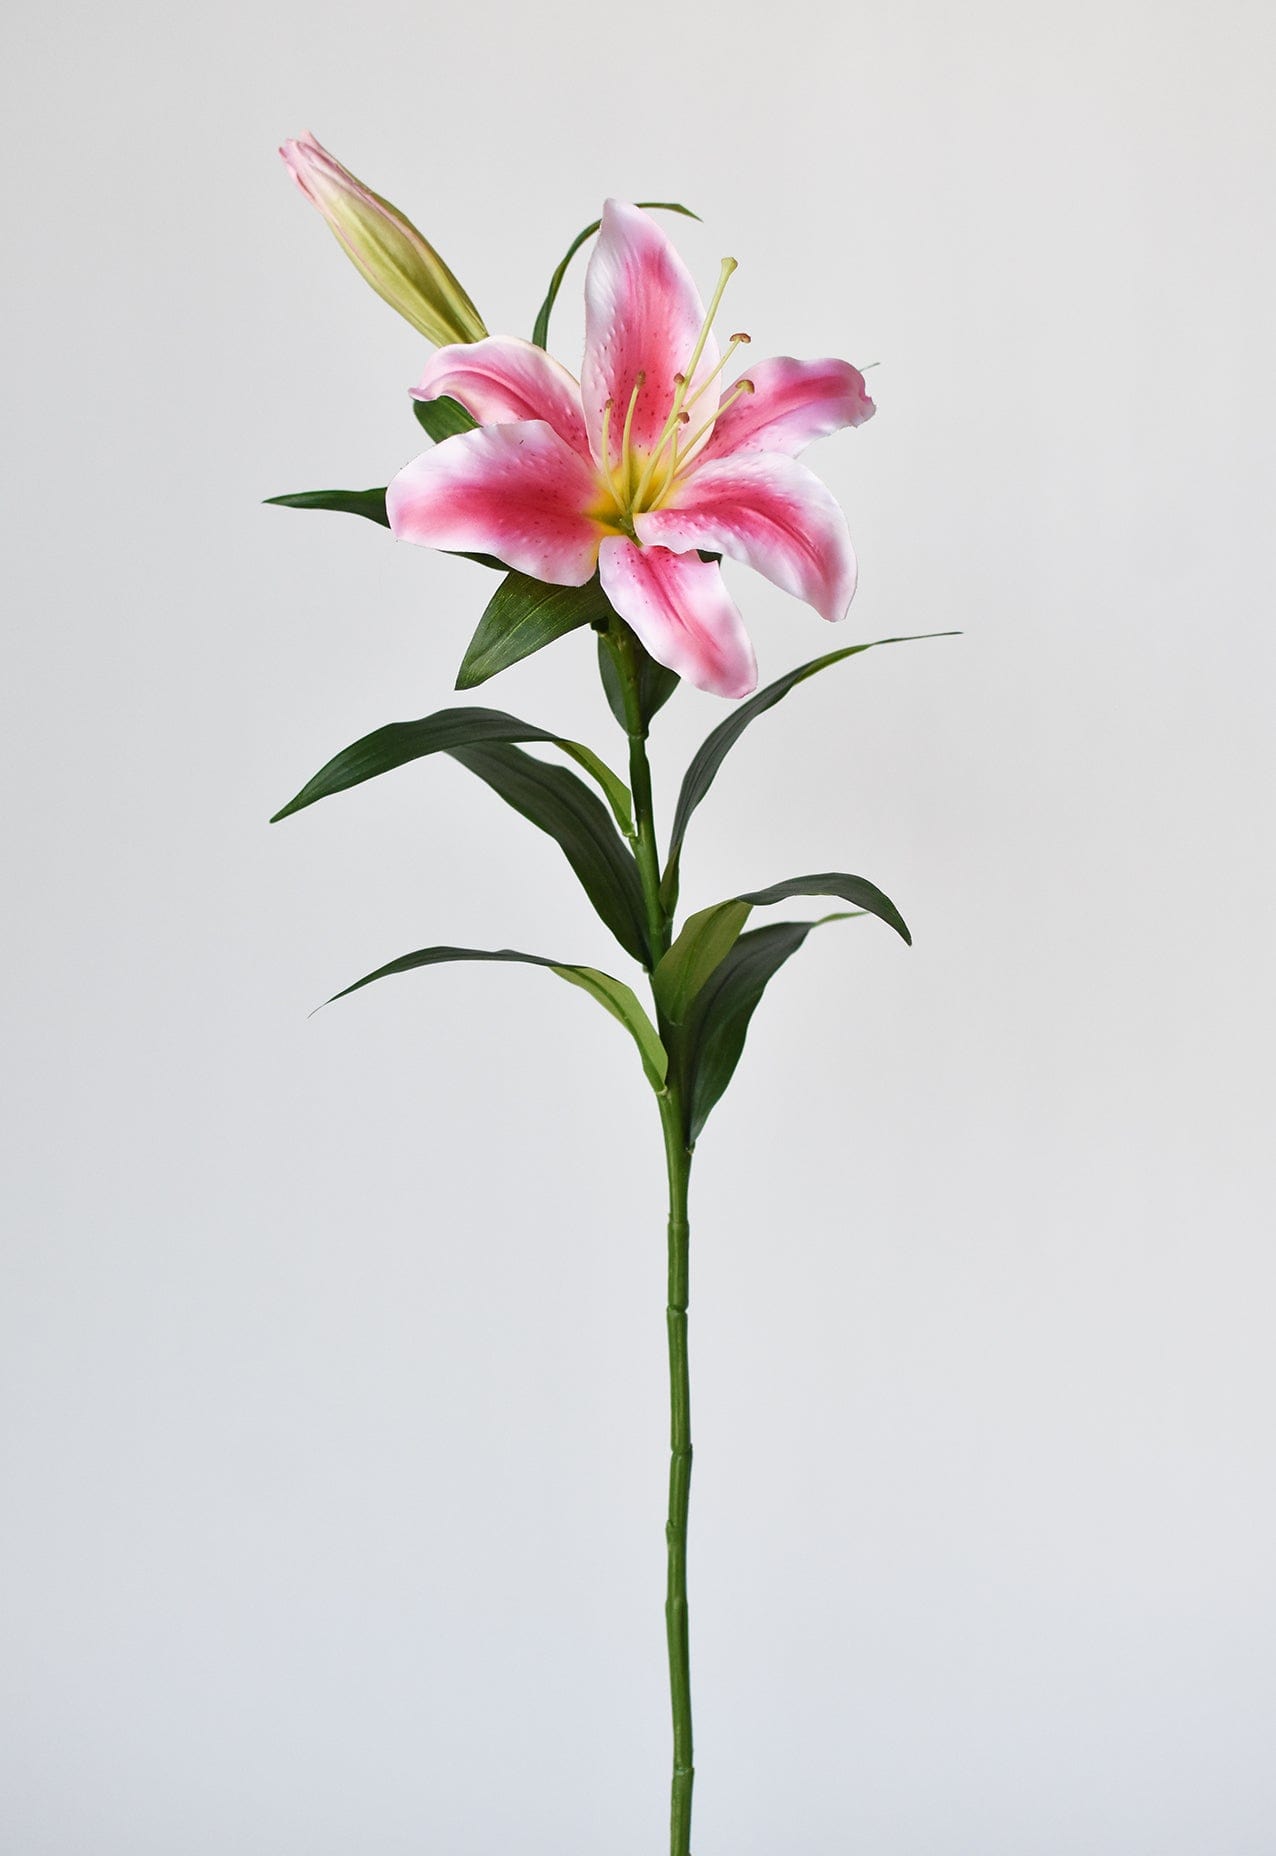  Ambesonne Fleur De Lis Pencil Case, Pink Lily Flower